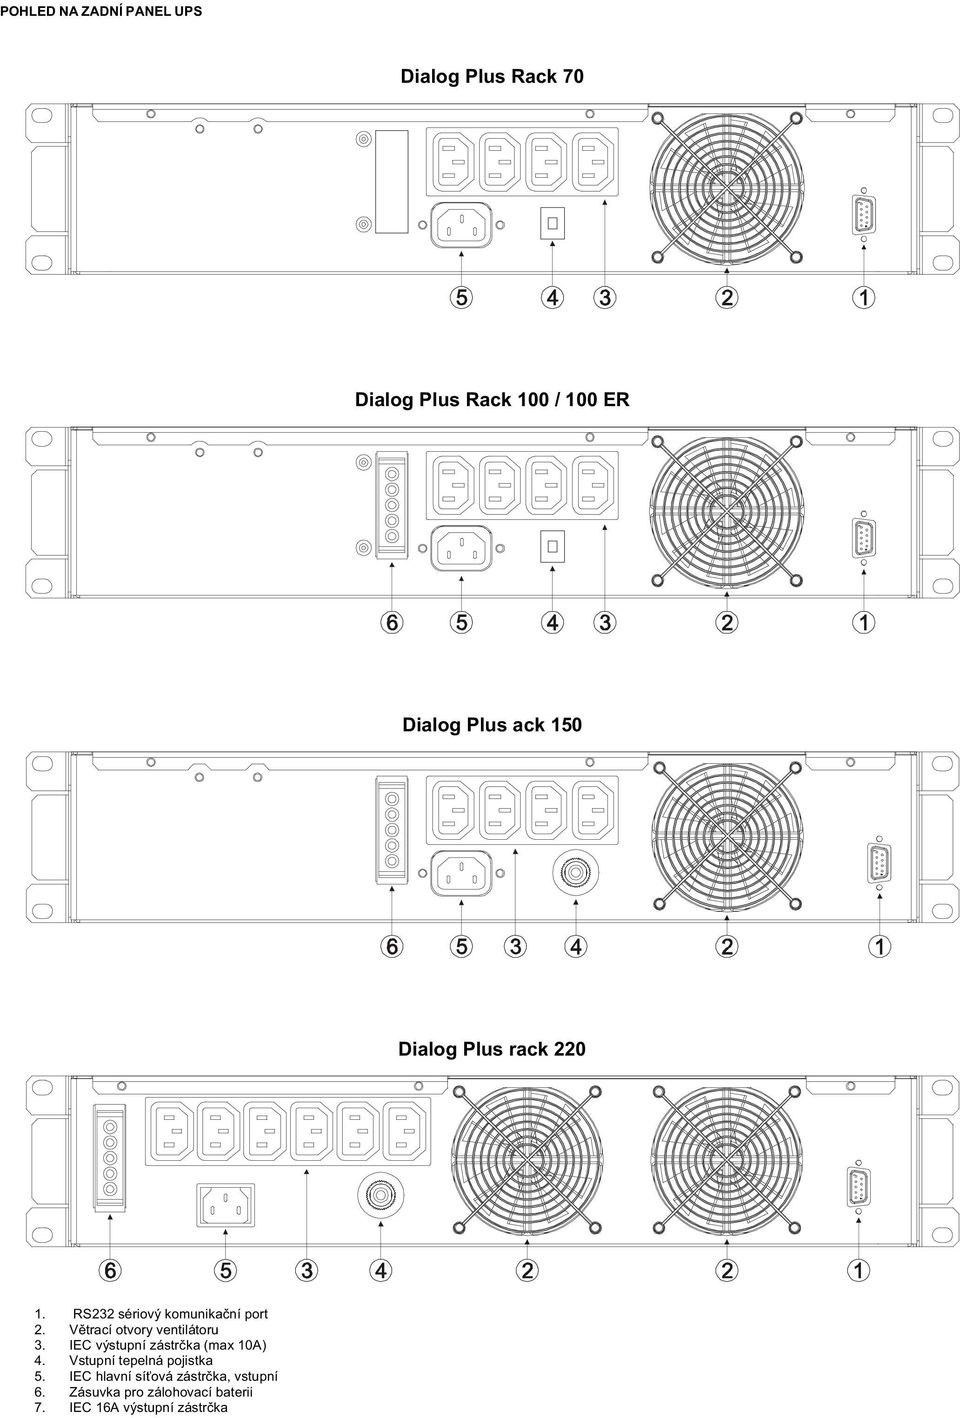 Větrací otvory ventilátoru 3. IEC výstupní zástrčka (max 10A) 4.